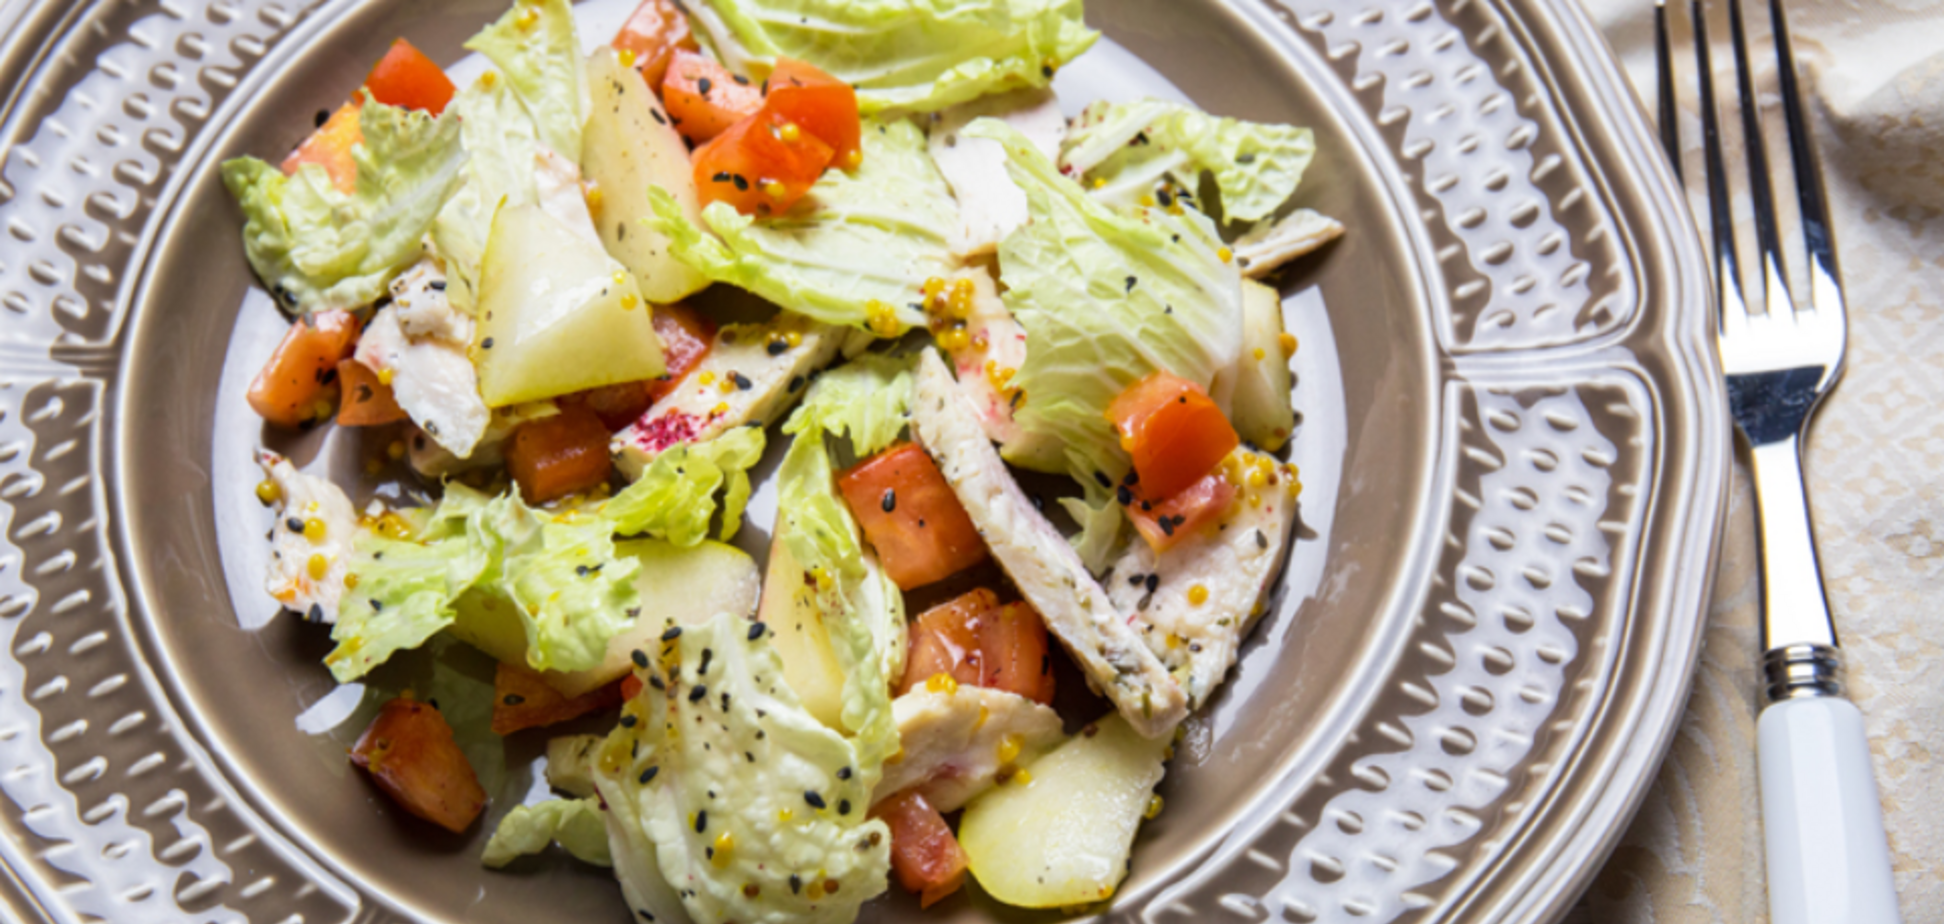 Как приготовить необычный салат с курицей: рецепт от известного кулинара